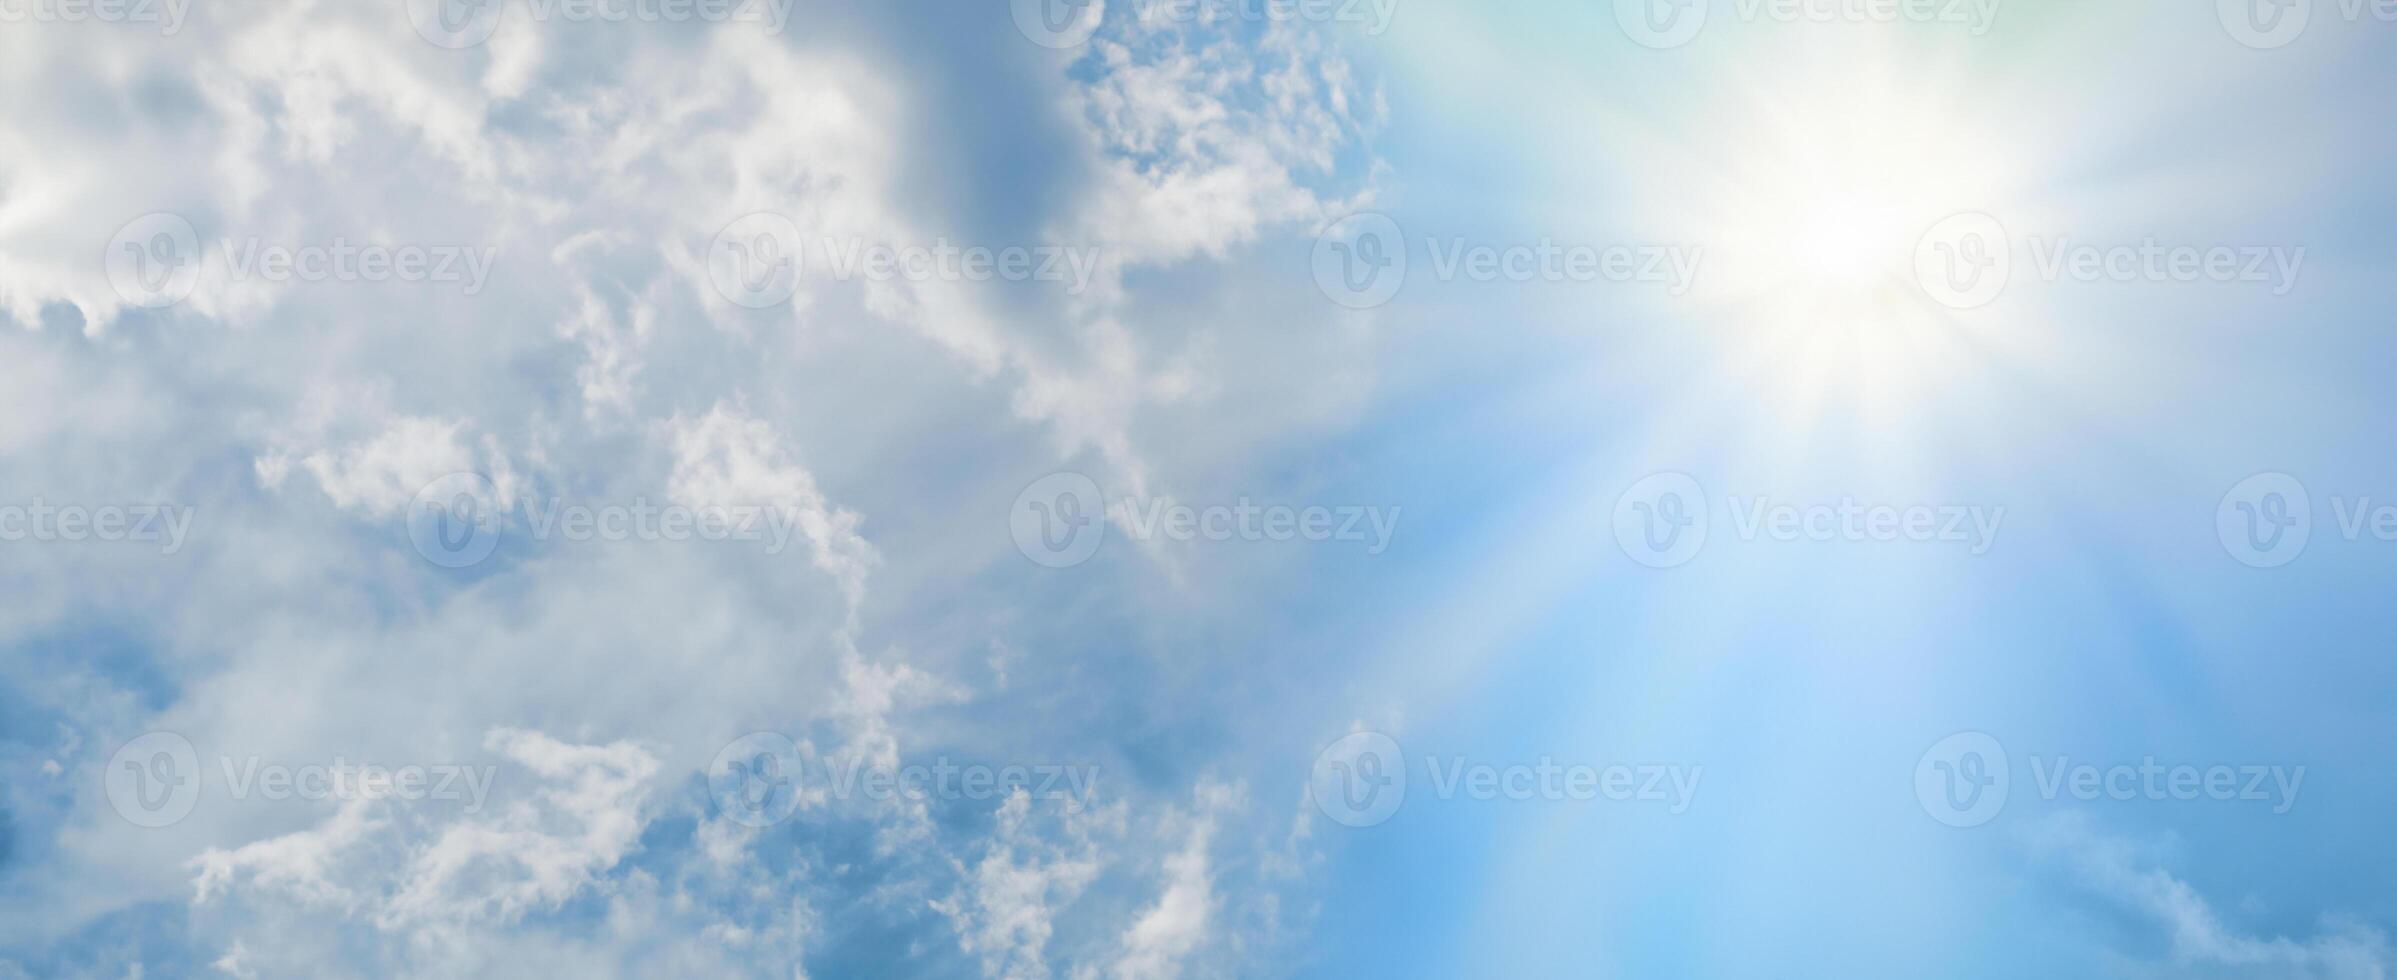 fesselnd Sunburst Piercing durch flauschige Wolken. foto